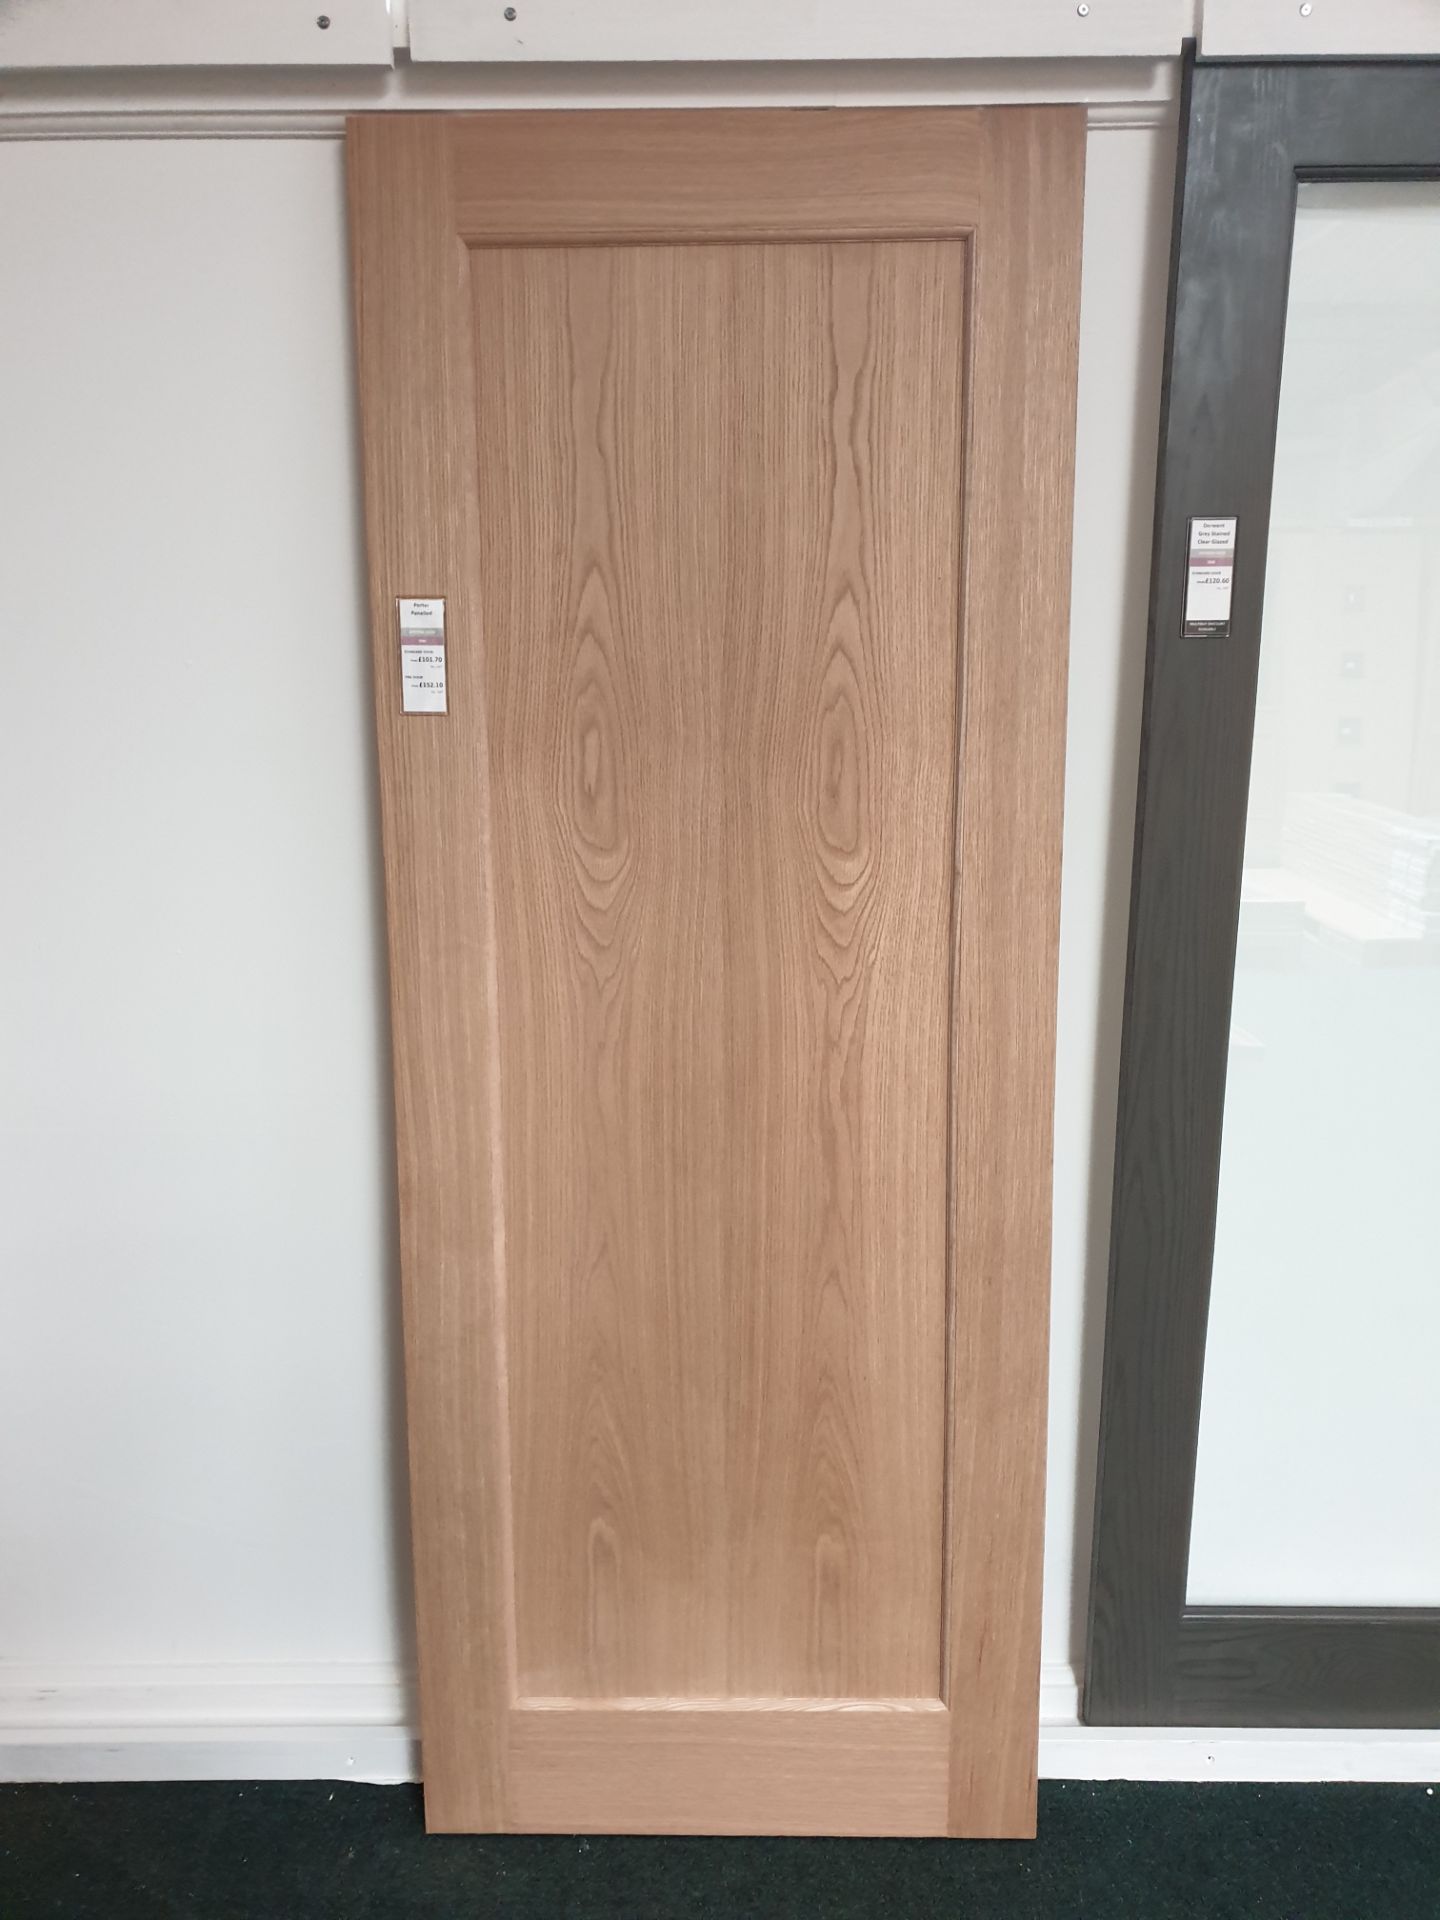 6 x Porter Flat Panel AWOPORT24 78”x24”x35mm Internal Door